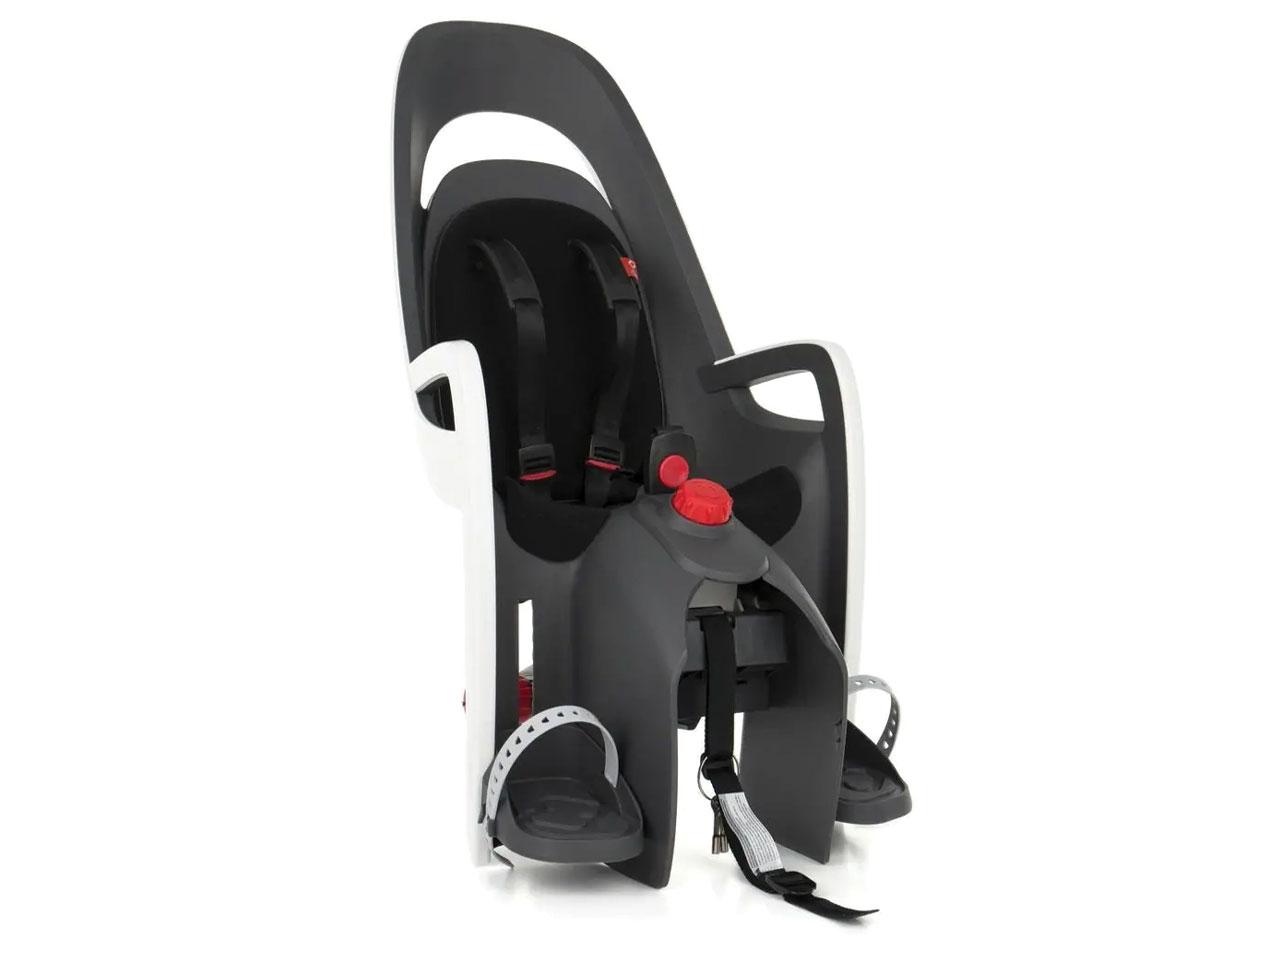 Cyklistická sedačka HAMAX Caress Plus, šedá/bílá/černá